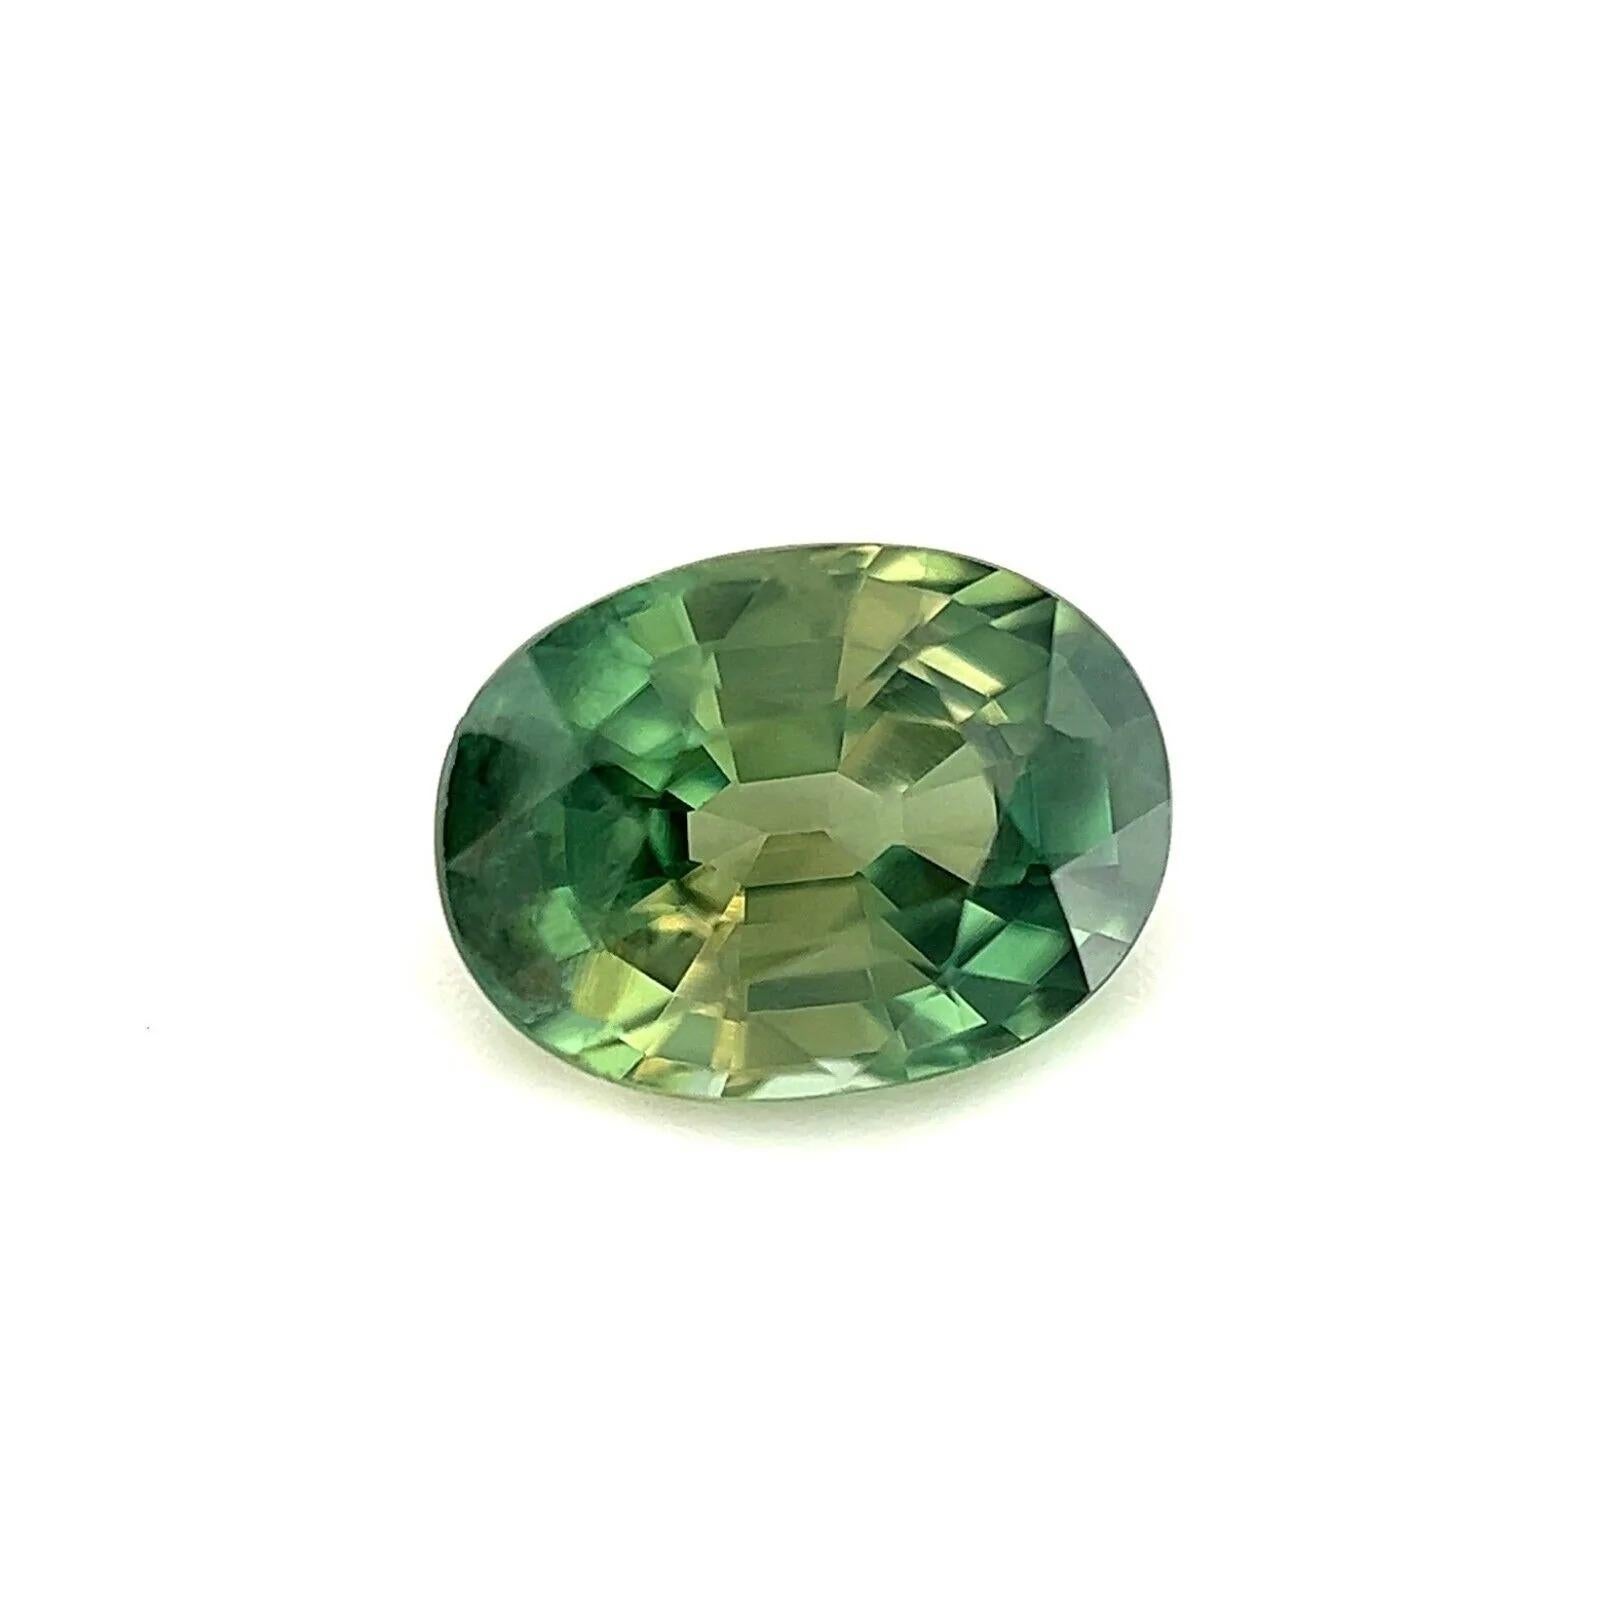 1.13ct Natürlicher Feiner Grüner Thailand Saphir Oval Schliff Seltener Edelstein 6.7x5mm

Natürlicher grüner Thai-Saphir Edelstein.
1.13 Karat Saphir mit einer schönen hellgrünen Farbe. Auch hat sehr gute Klarheit, einige kleine natürliche